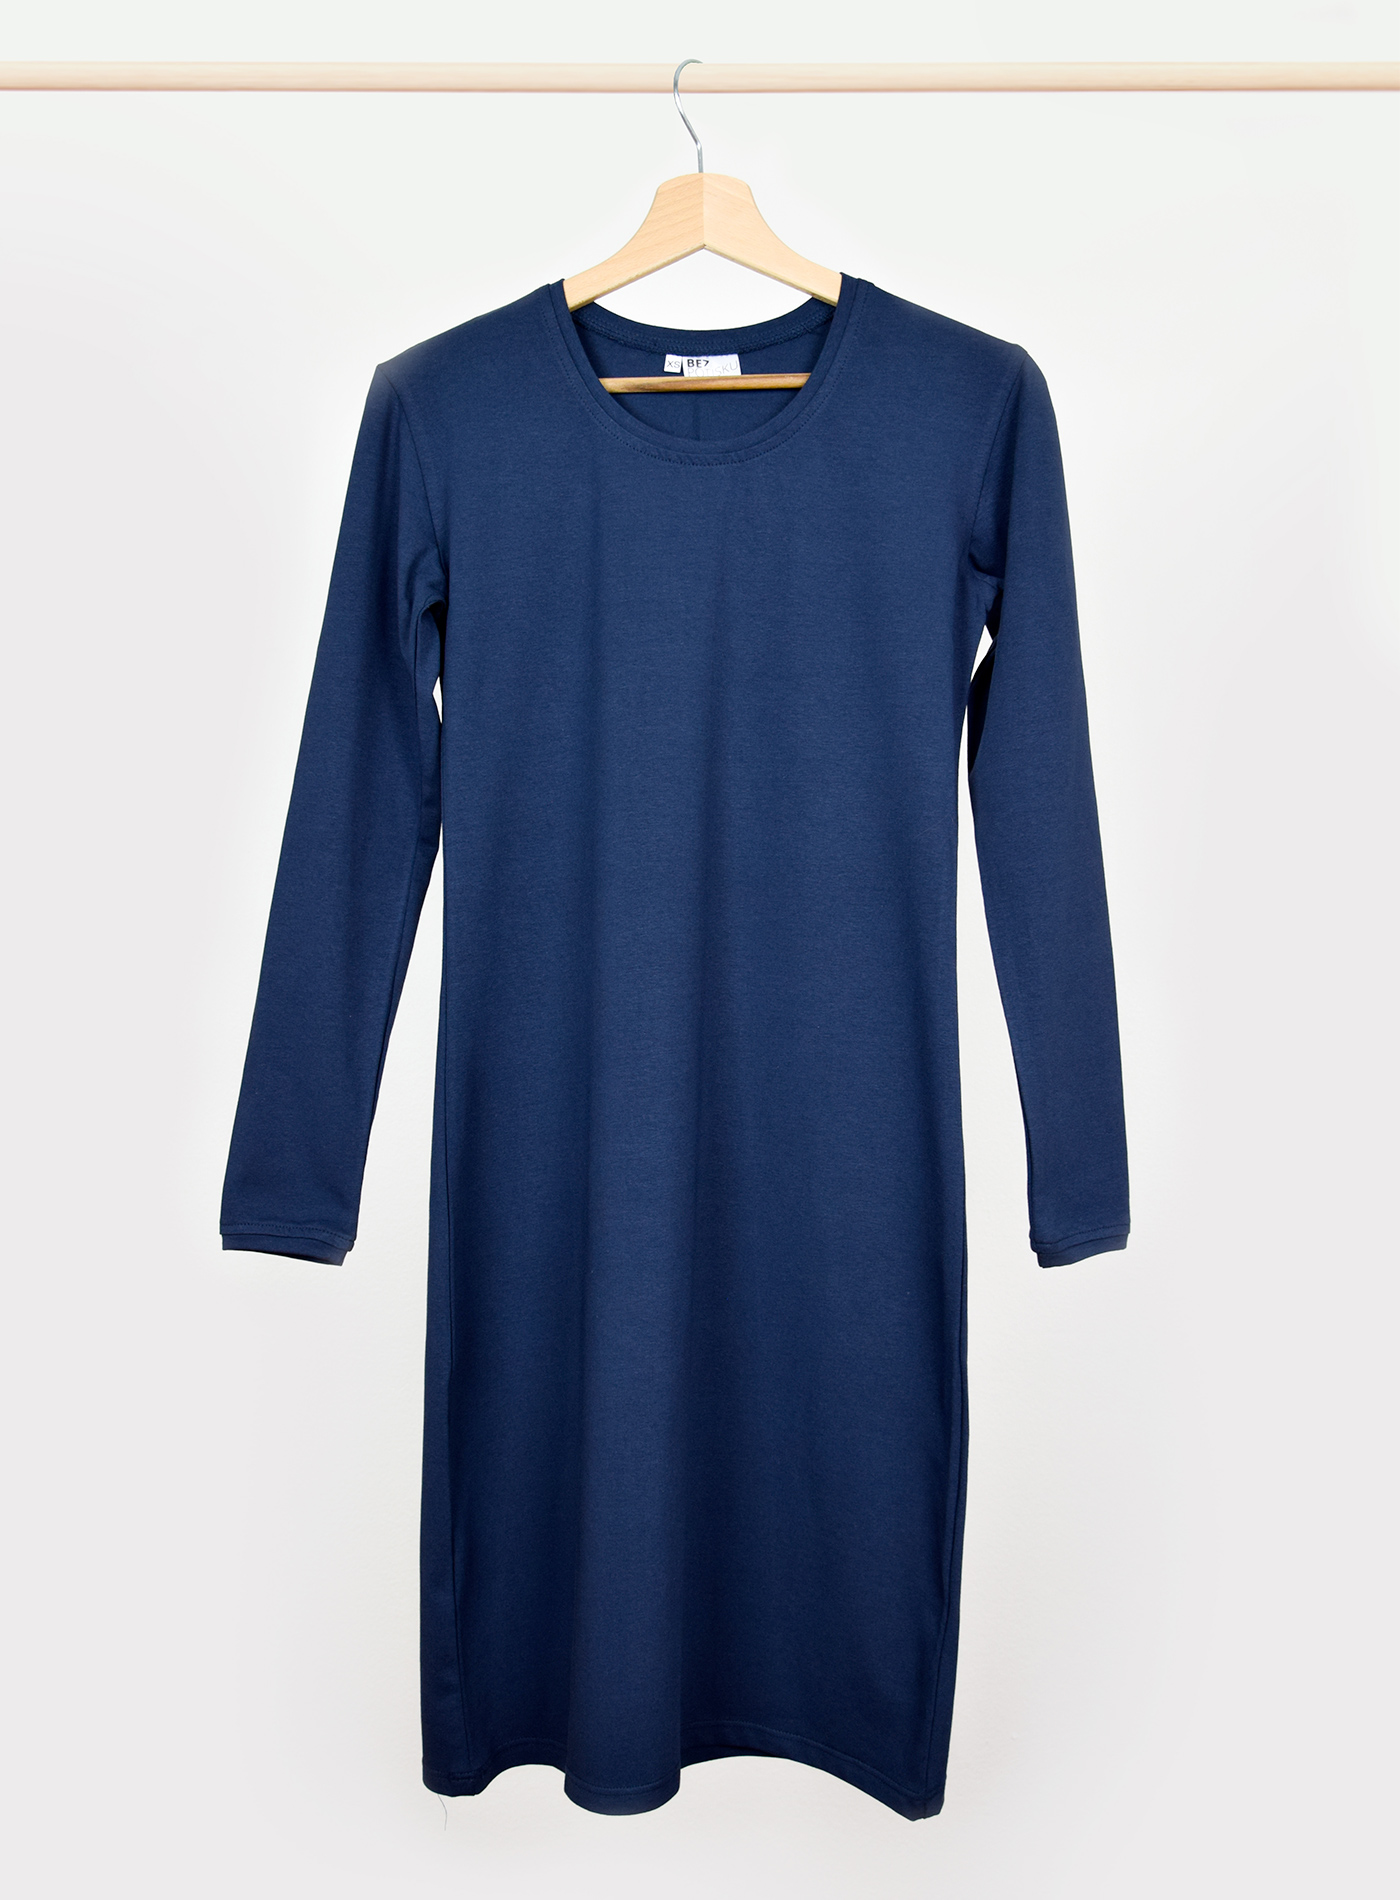 Dámské šaty s dlouhým rukávem BezPotisku Veronika - tmavě modrá S